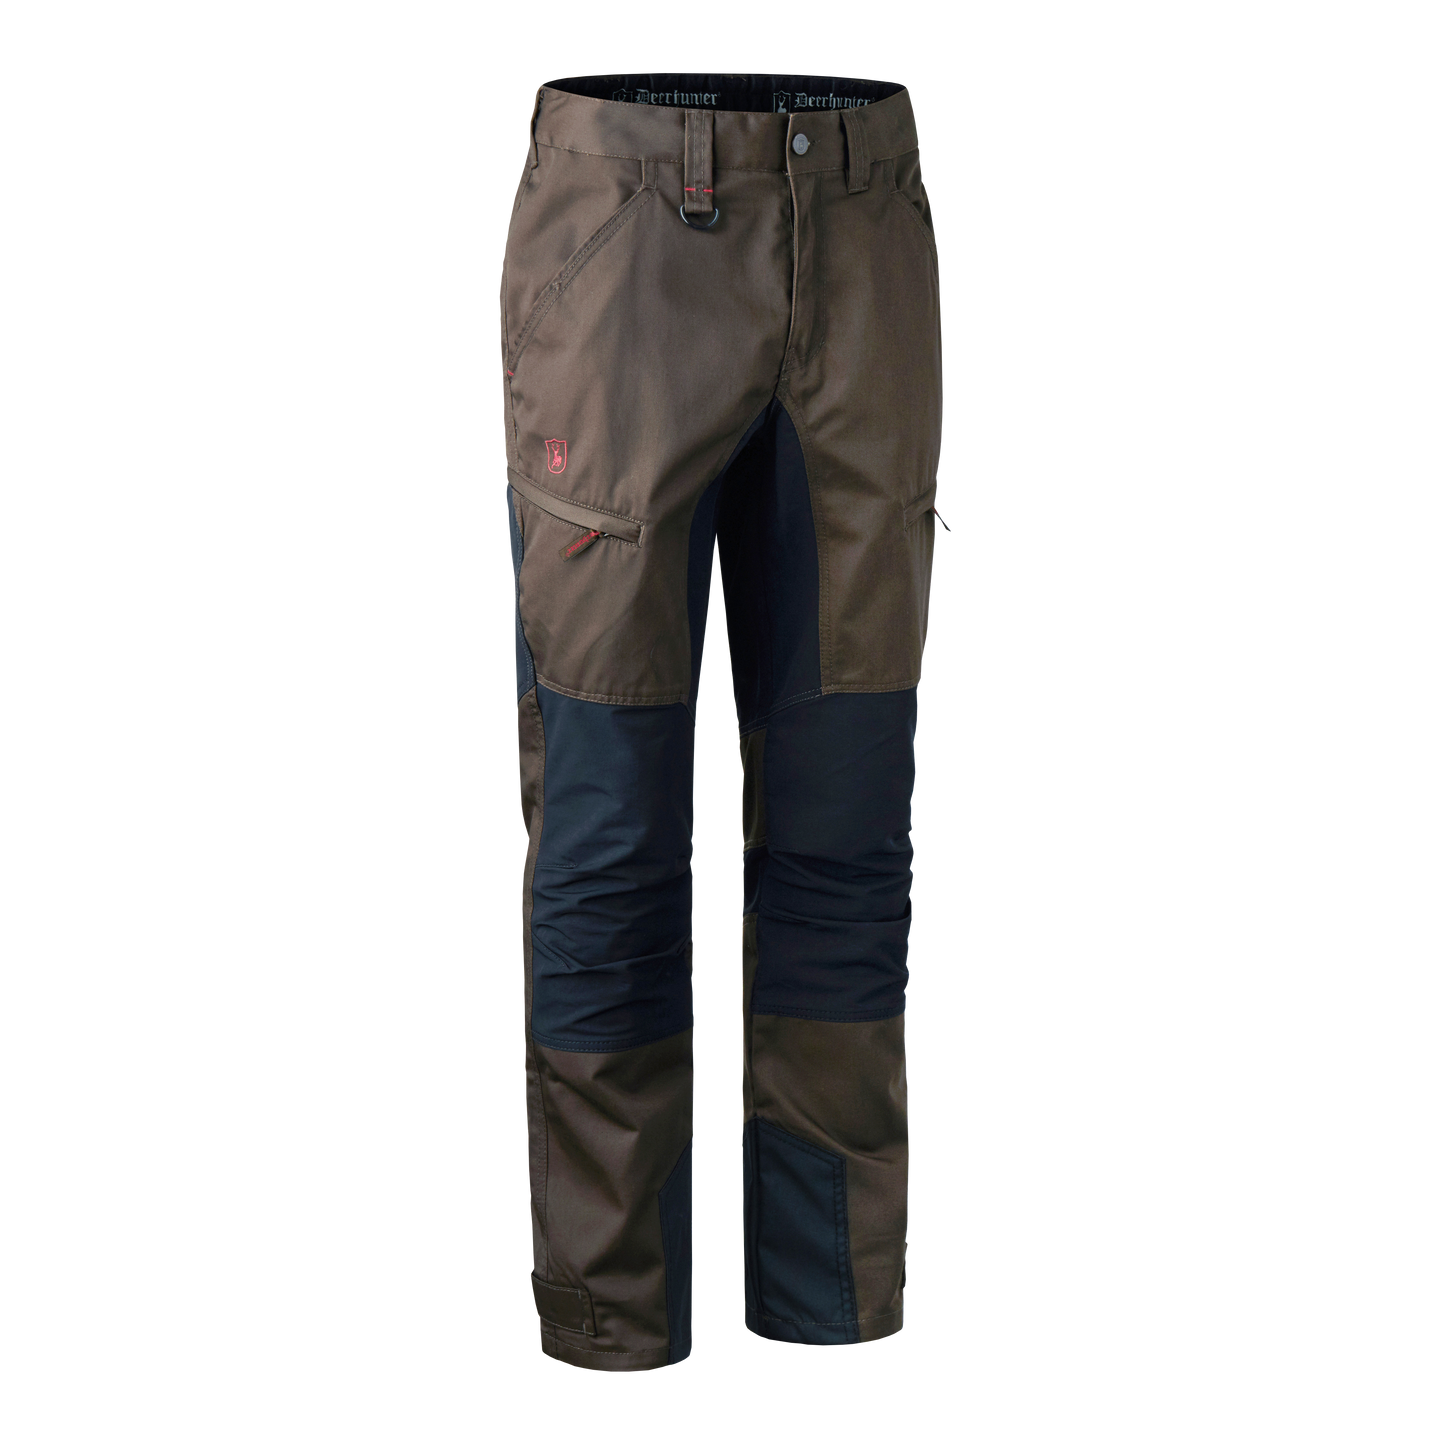 Pantaloni Rogaland da uomo elasticizzati con contrasto